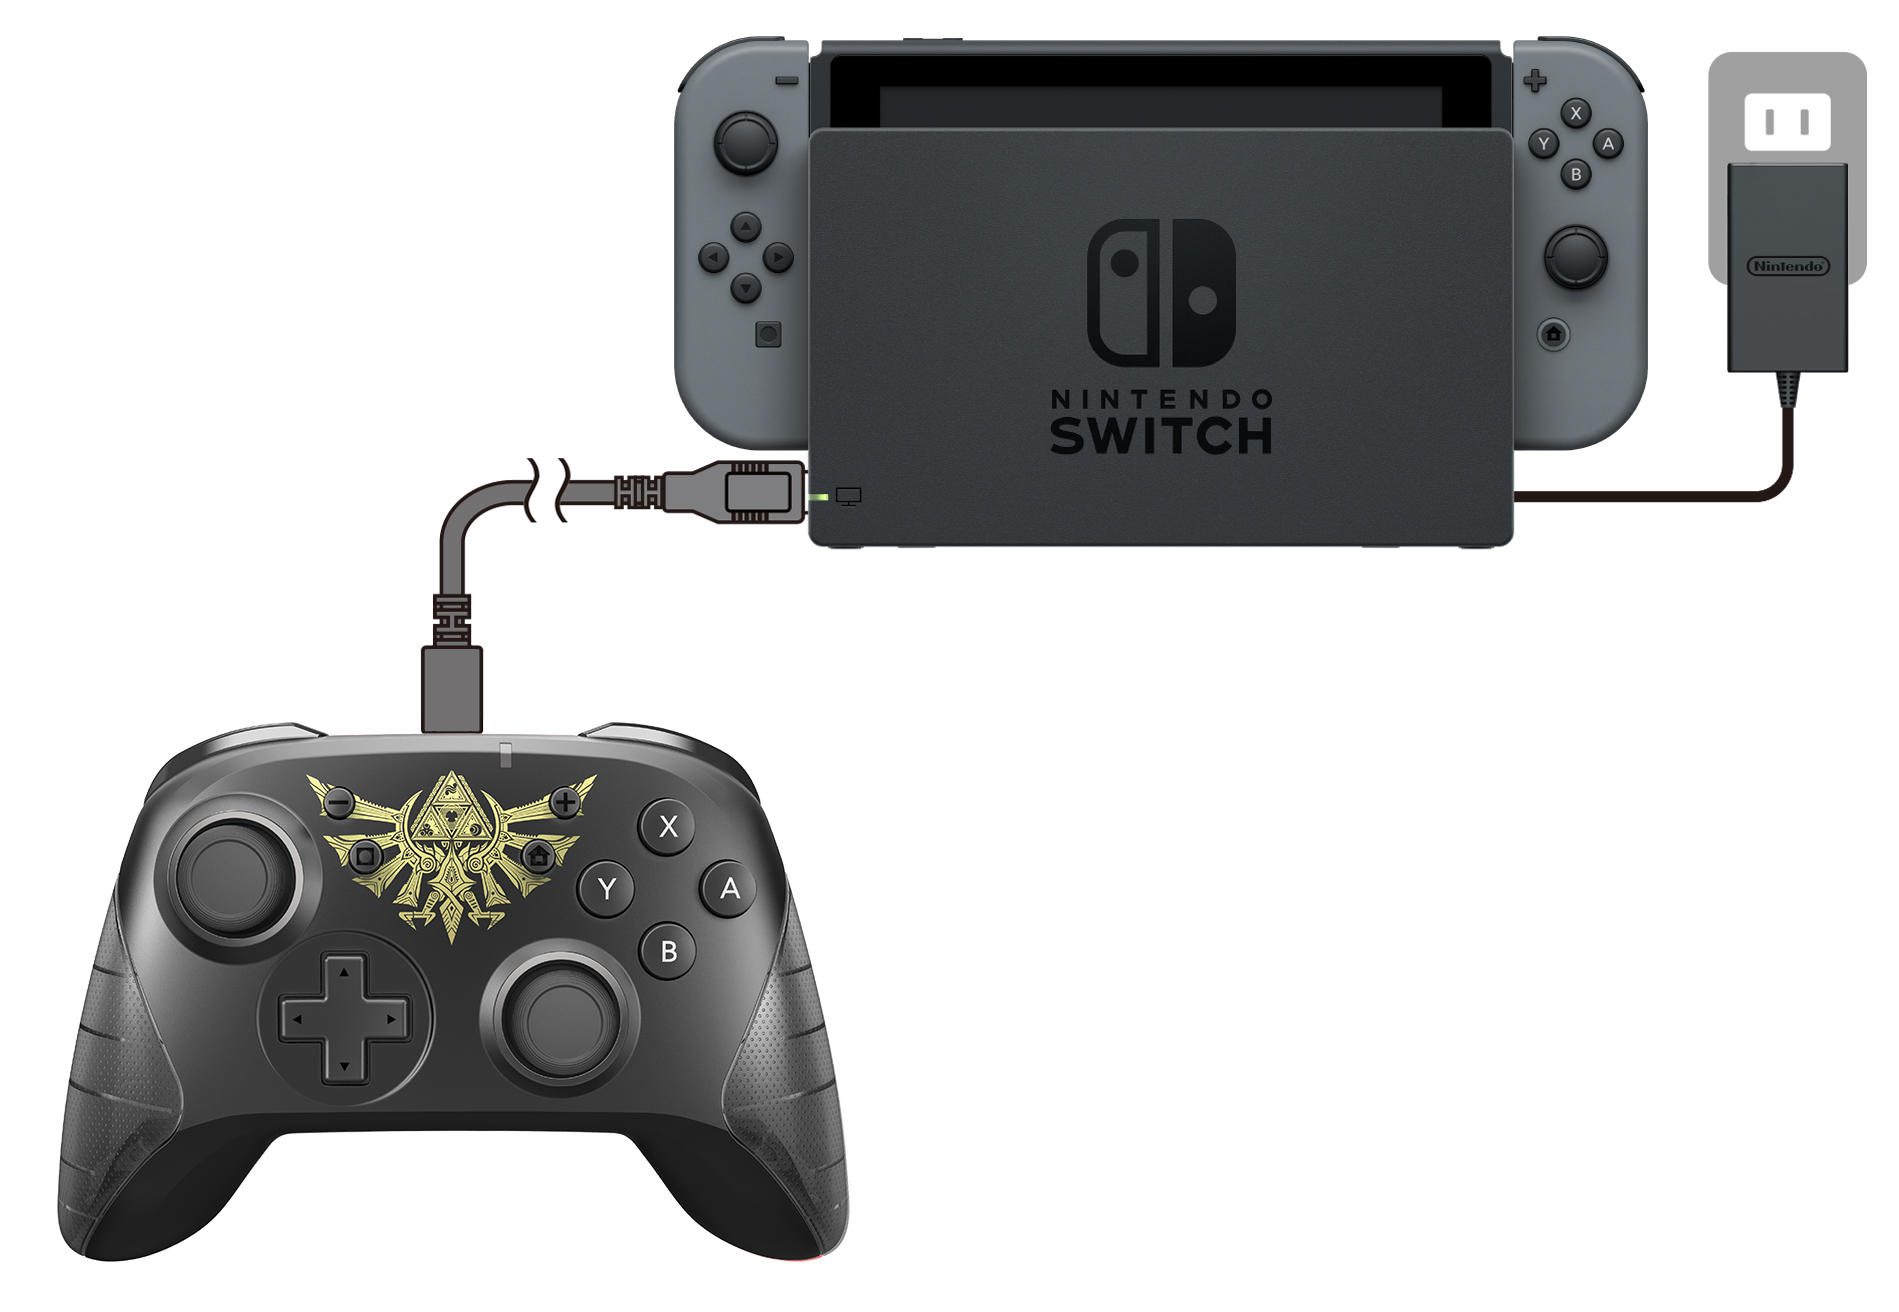 株式会社 Hori ワイヤレスホリパッド For Nintendo Switch ゼルダの伝説